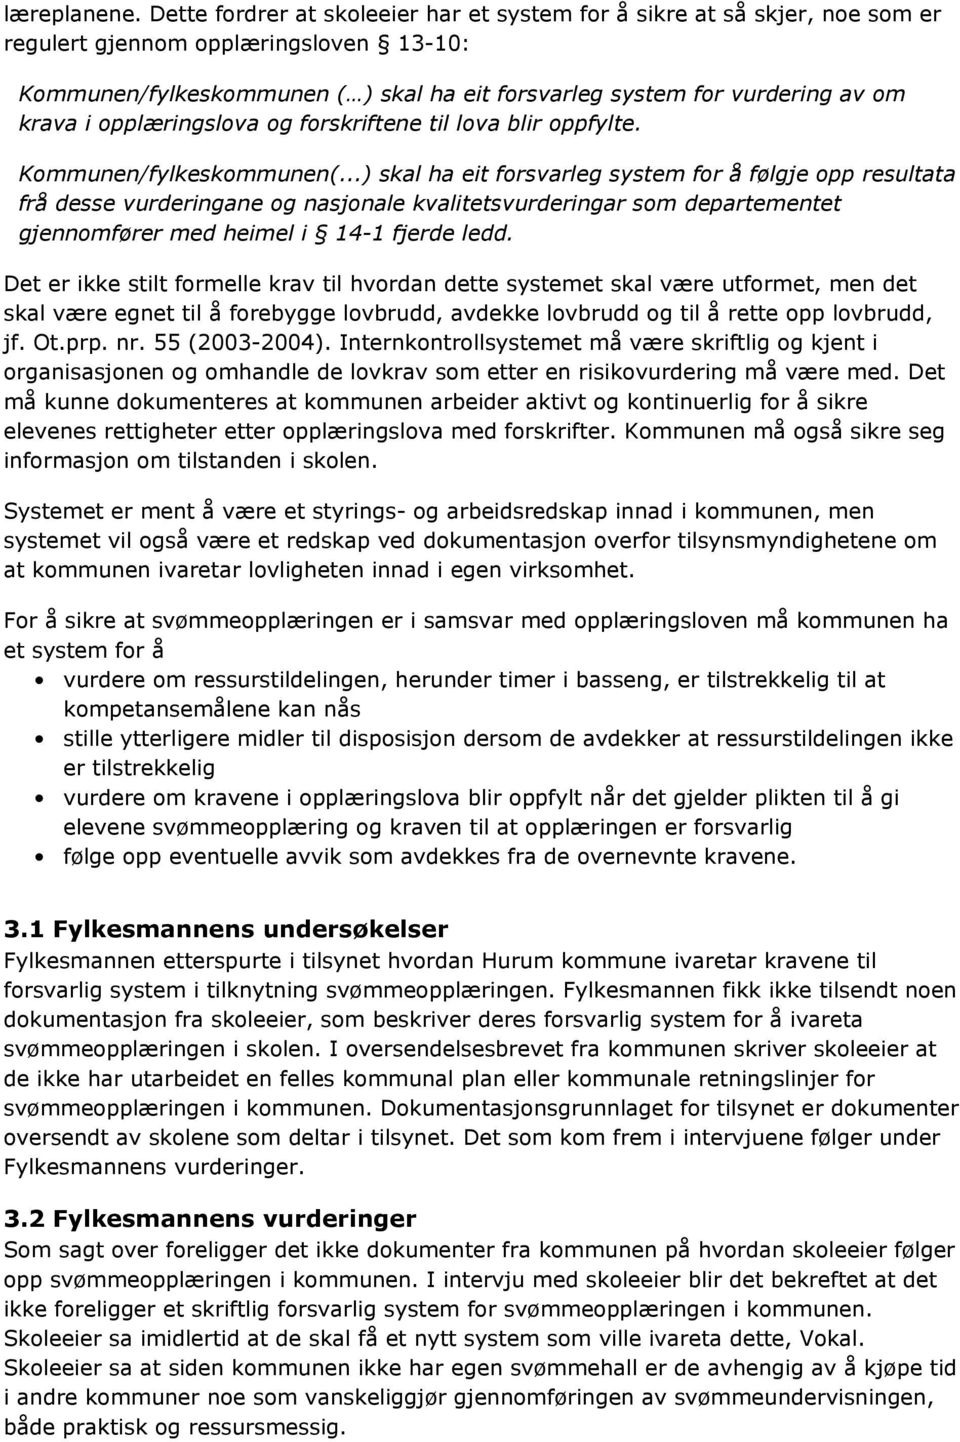 krava i opplæringslova og forskriftene til lova blir oppfylte. Kommunen/fylkeskommunen(.